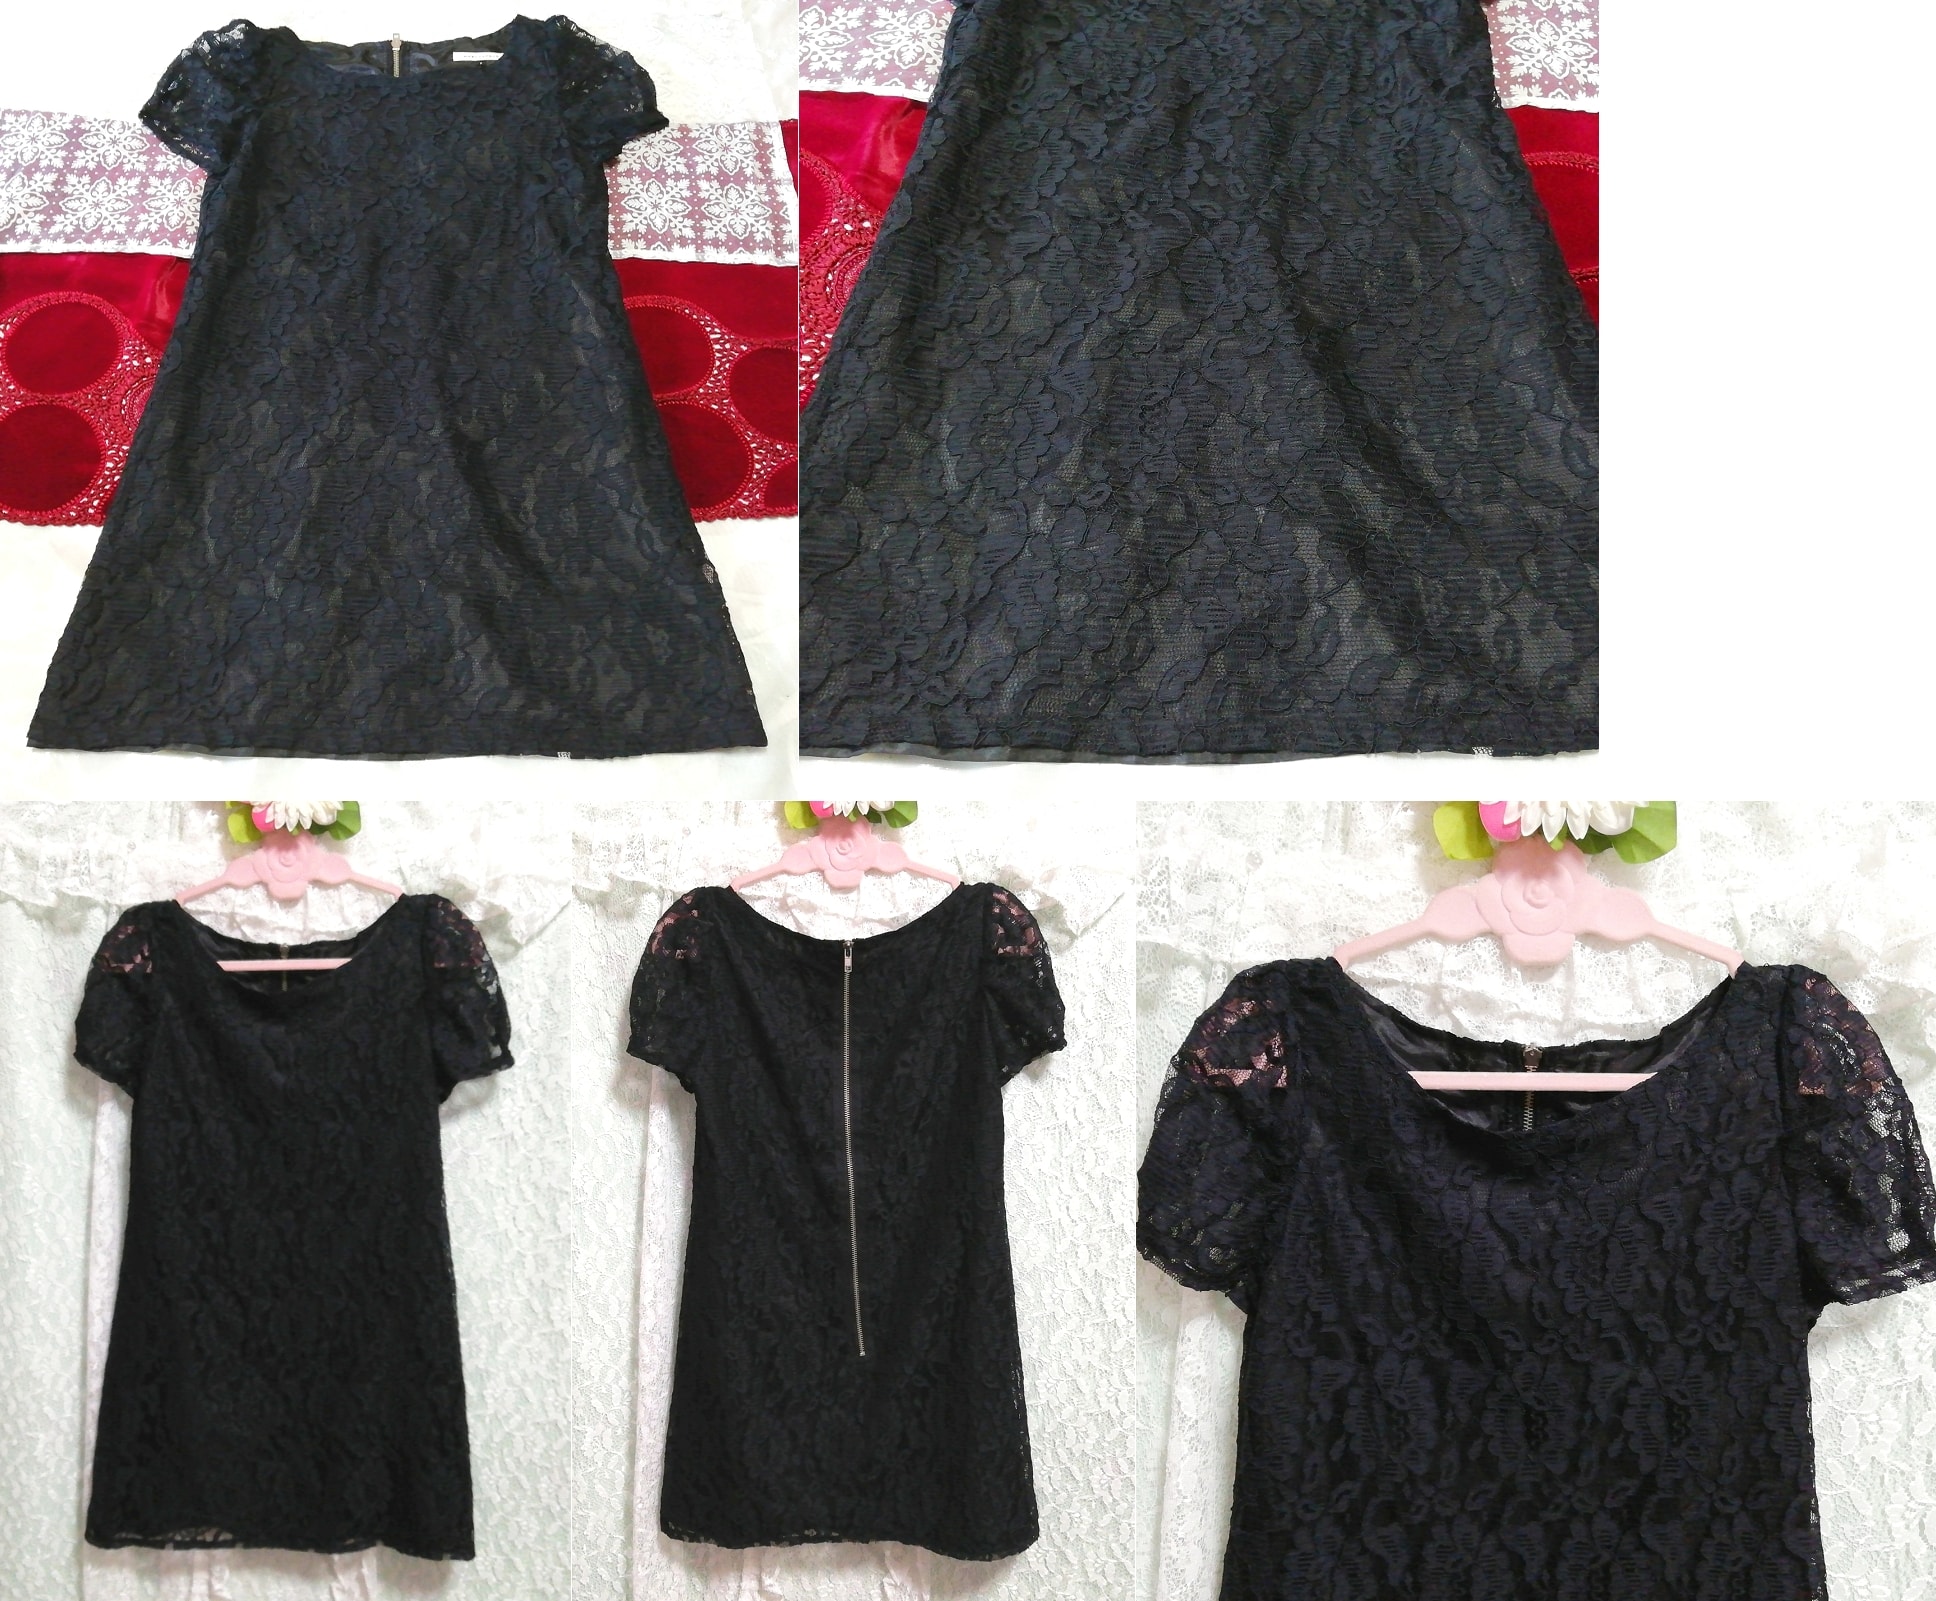 블랙 레이스 반소매 튜닉 네글리제 잠옷 잠옷 드레스, 튜닉, 짧은 소매, m 사이즈